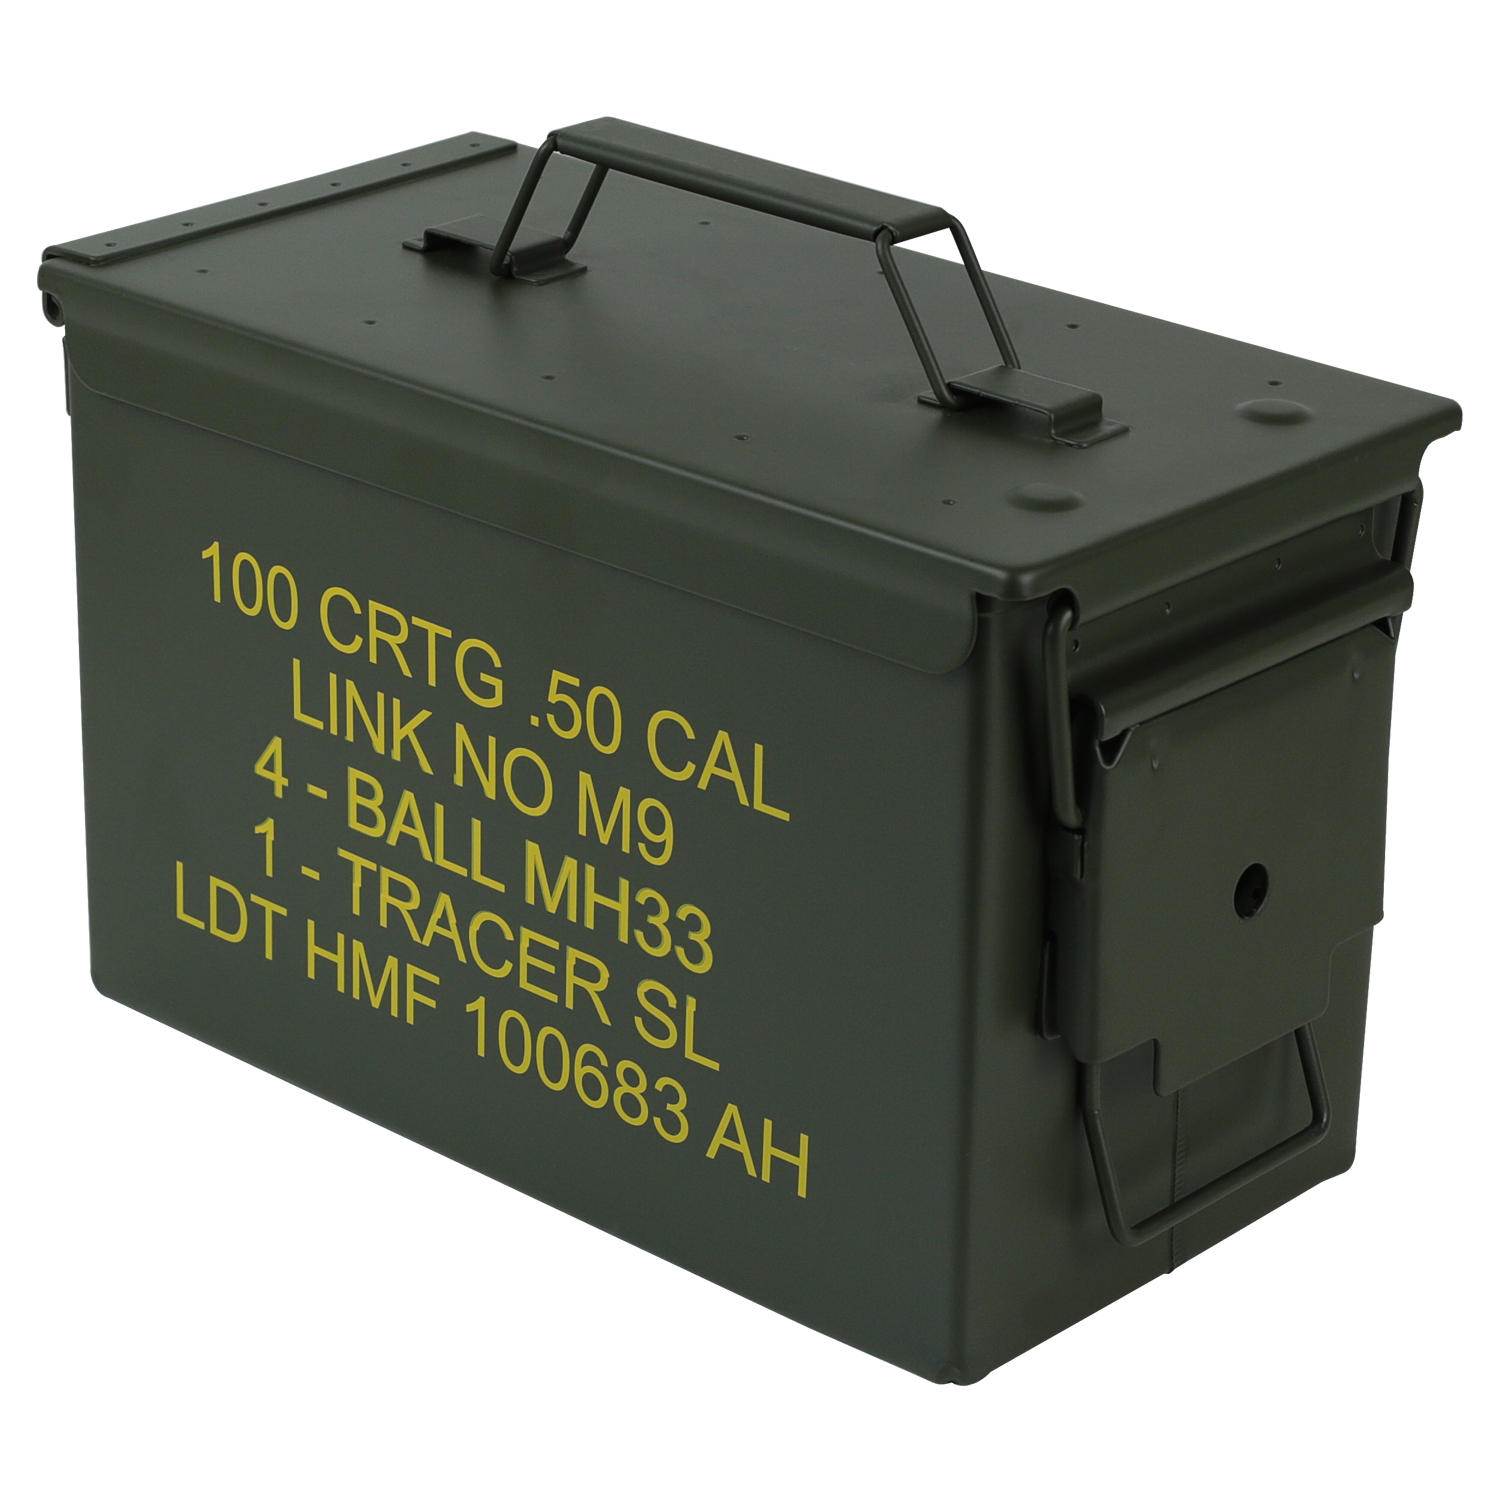 US Ammo Box als Munitionskoffer aus Metall von HMF mit den Maßen 30 x 19 x 15.5 cm in grün